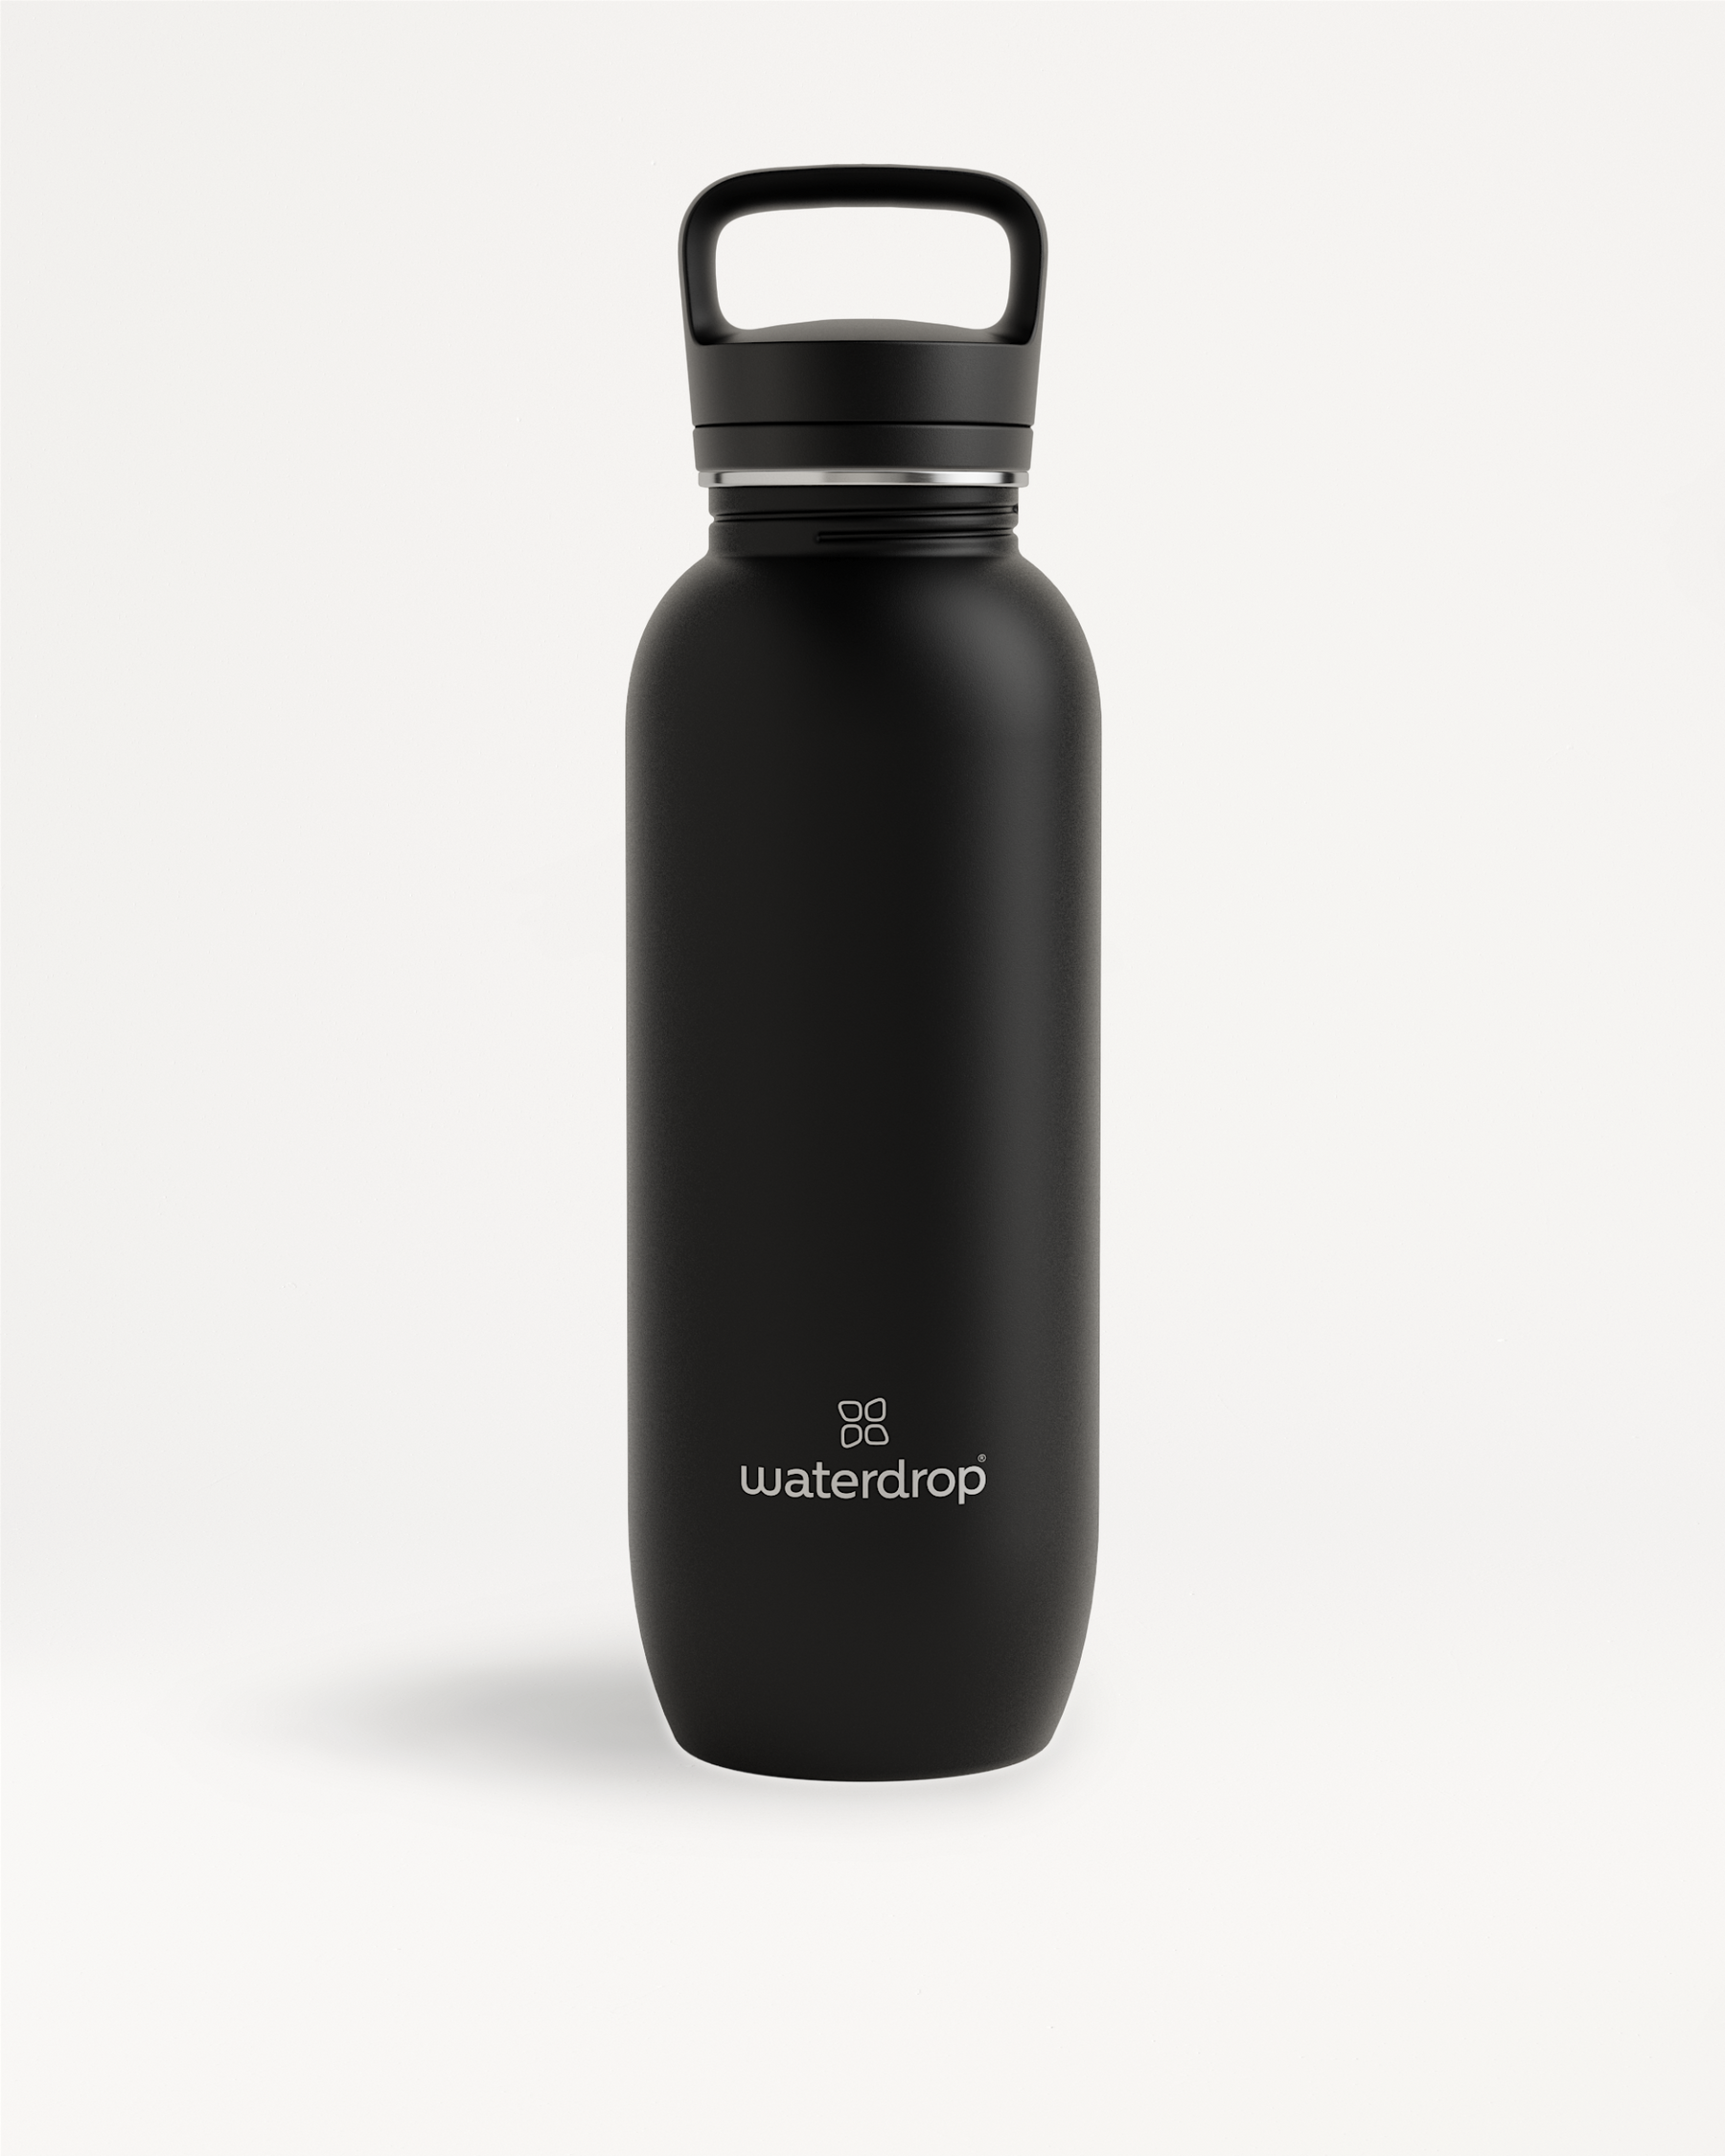 Waterdrop All-Purpose Ultralight · Spout Lid - Black Matt - 41 oz - Stainless Steel Water Bottle - Plastic Free Water Bottle